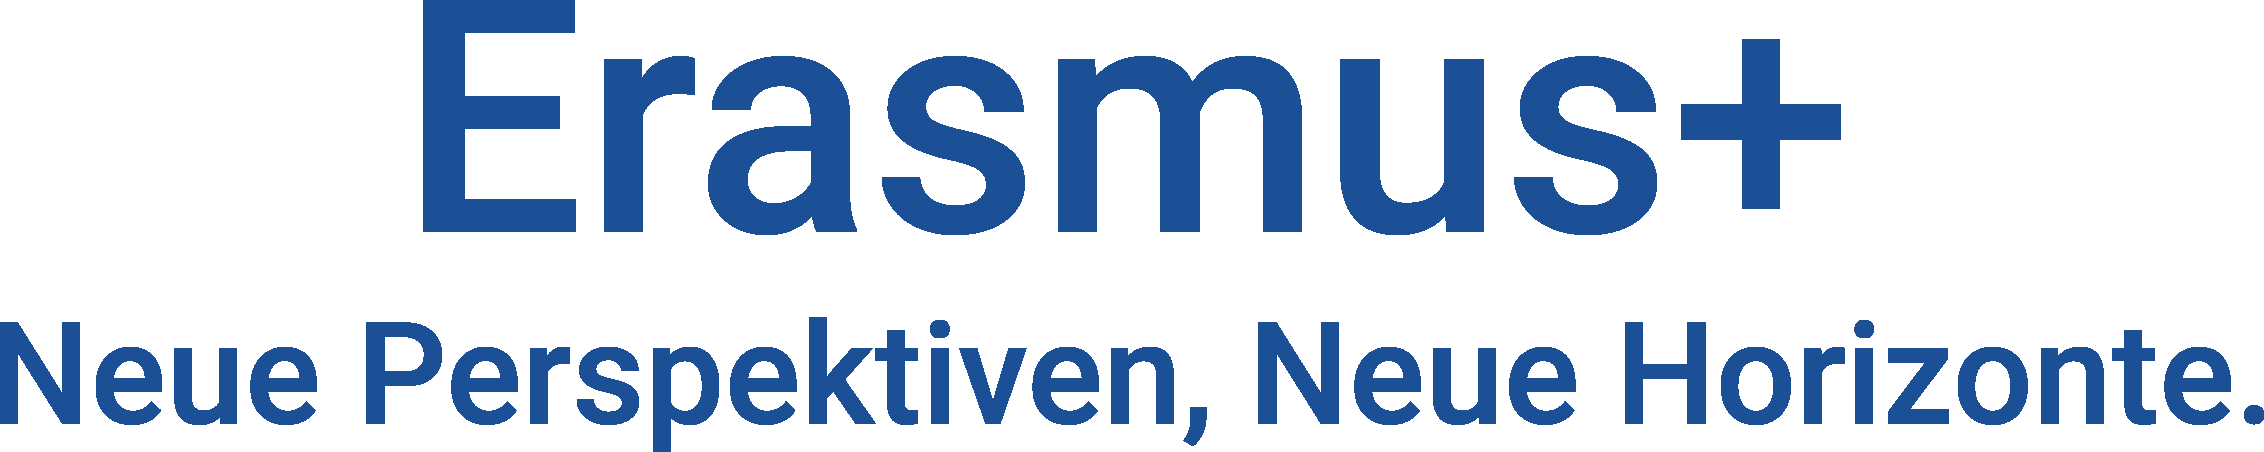 Logo des Erasmus+ Programms